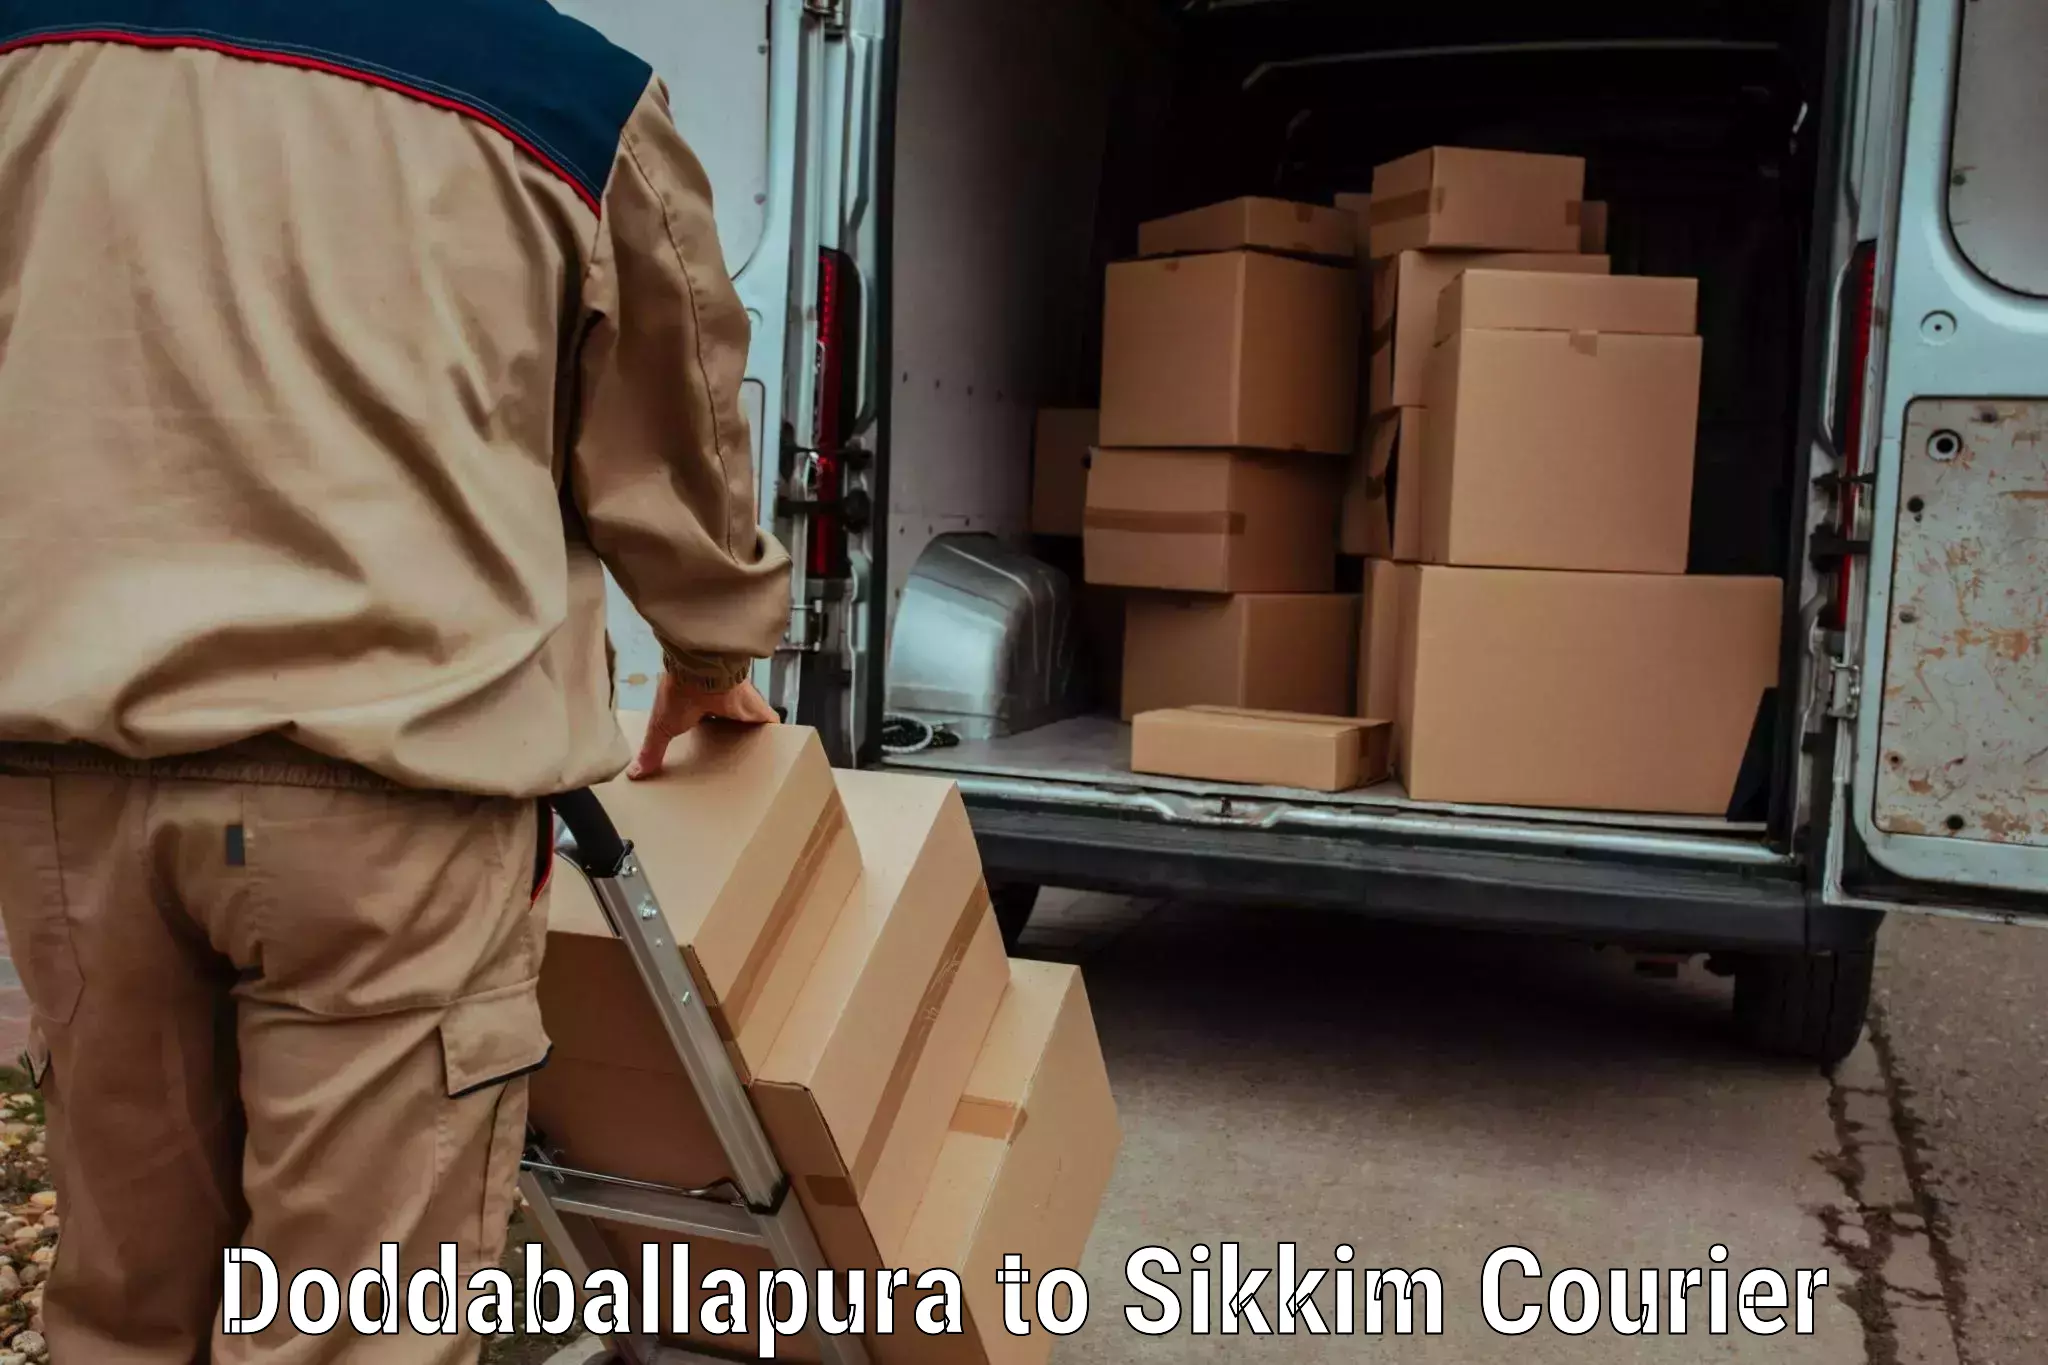 Hassle-free luggage shipping Doddaballapura to Sikkim